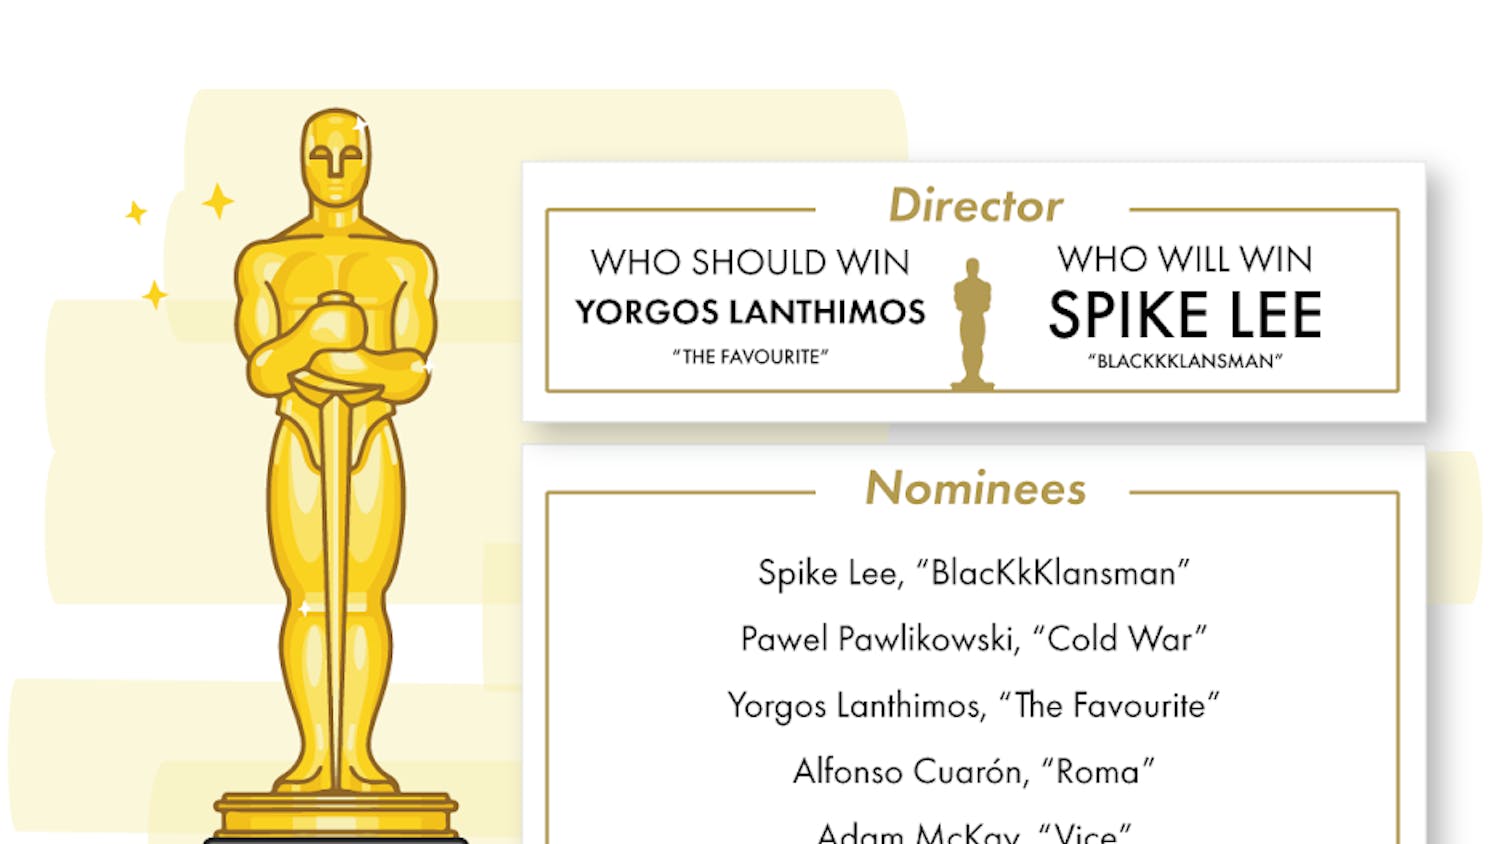 Oscars Director 2019